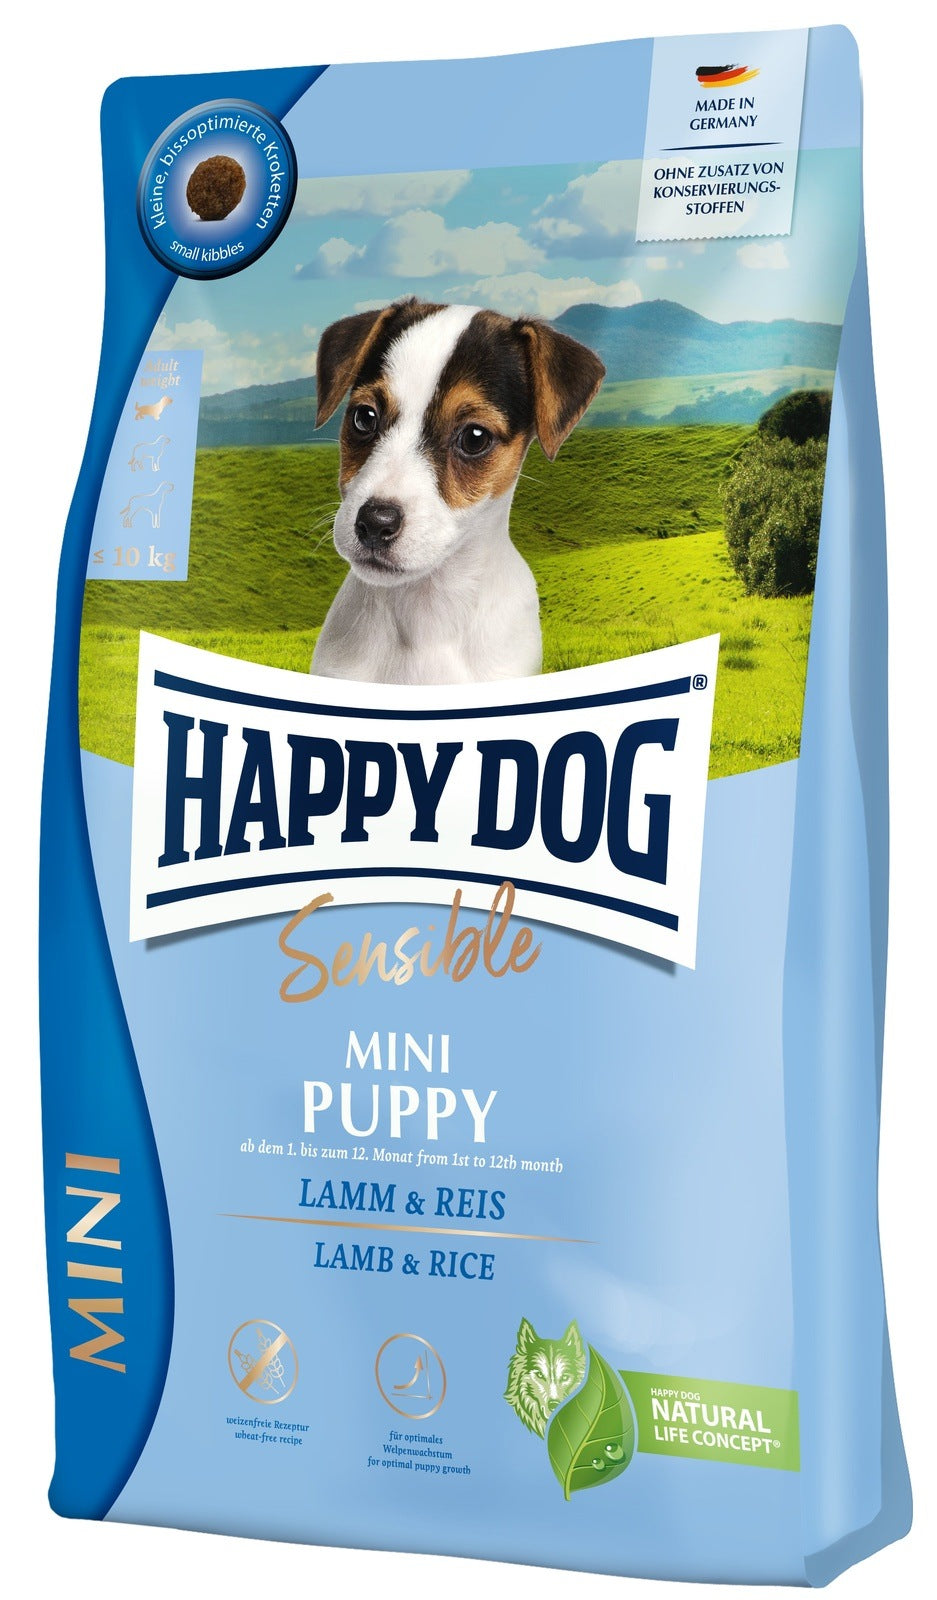 Artikel mit dem Namen Happy Dog Sensible Mini Puppy im Shop von zoo.de , dem Onlineshop für nachhaltiges Hundefutter und Katzenfutter.